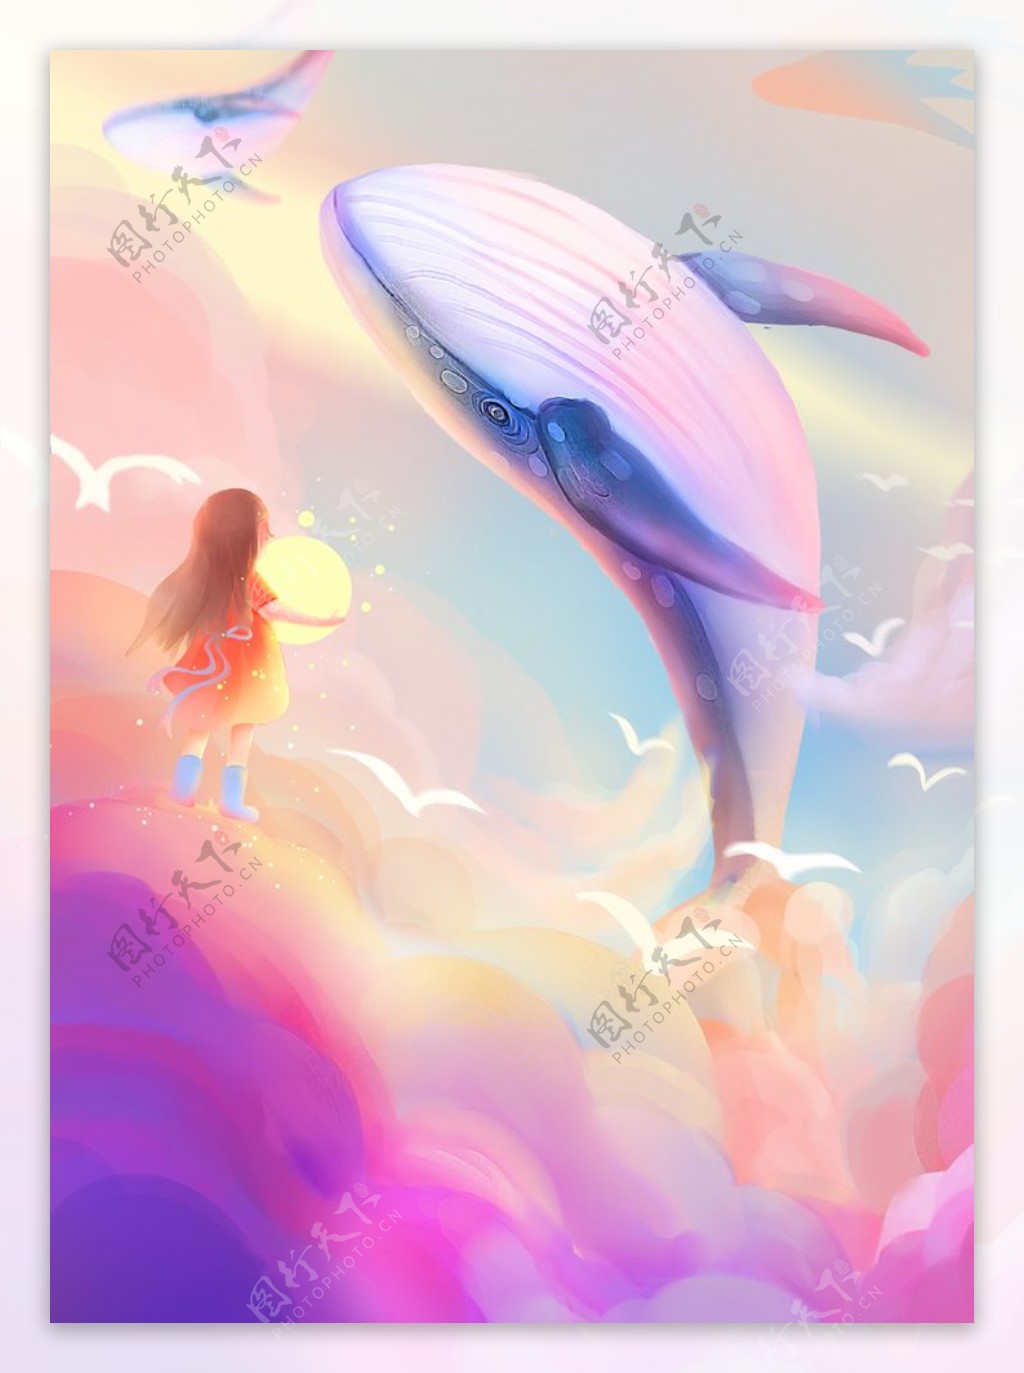 女孩日落鲸鱼与天空治愈系插画图片